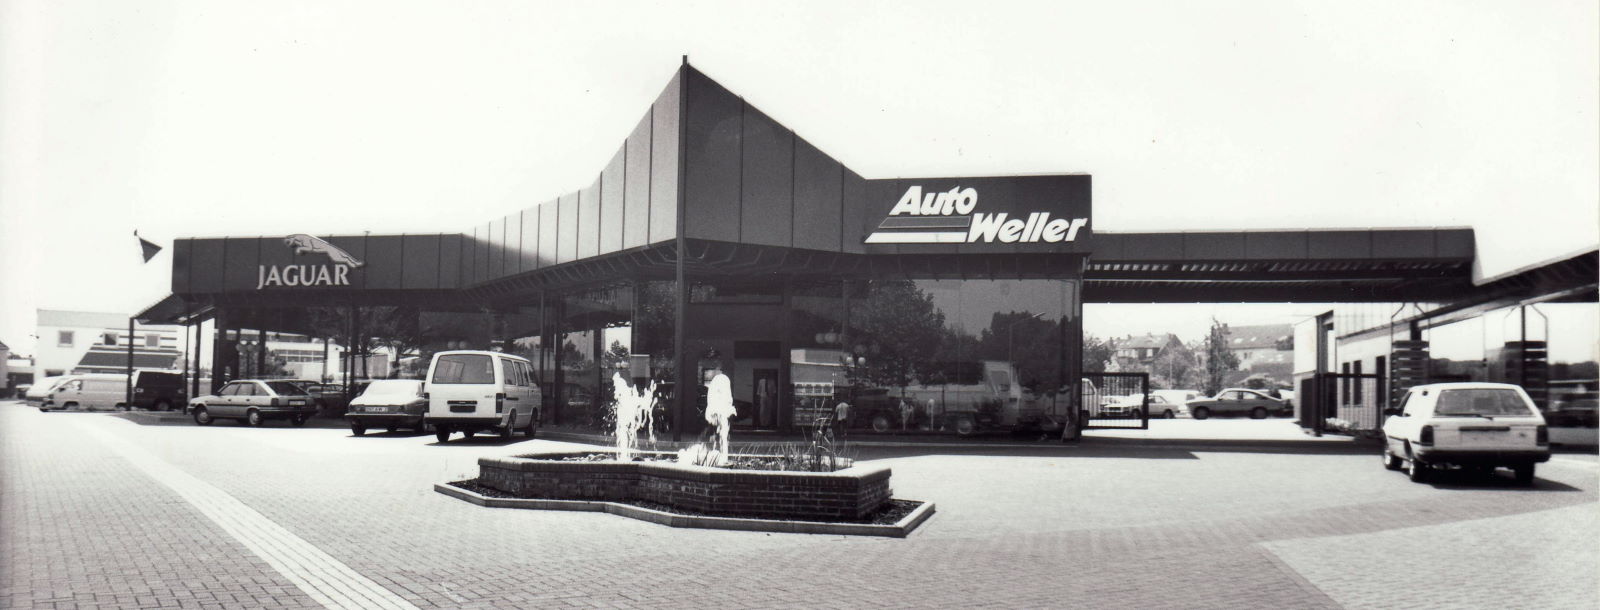 Das neue Auto Weller Gebäude anno 1984